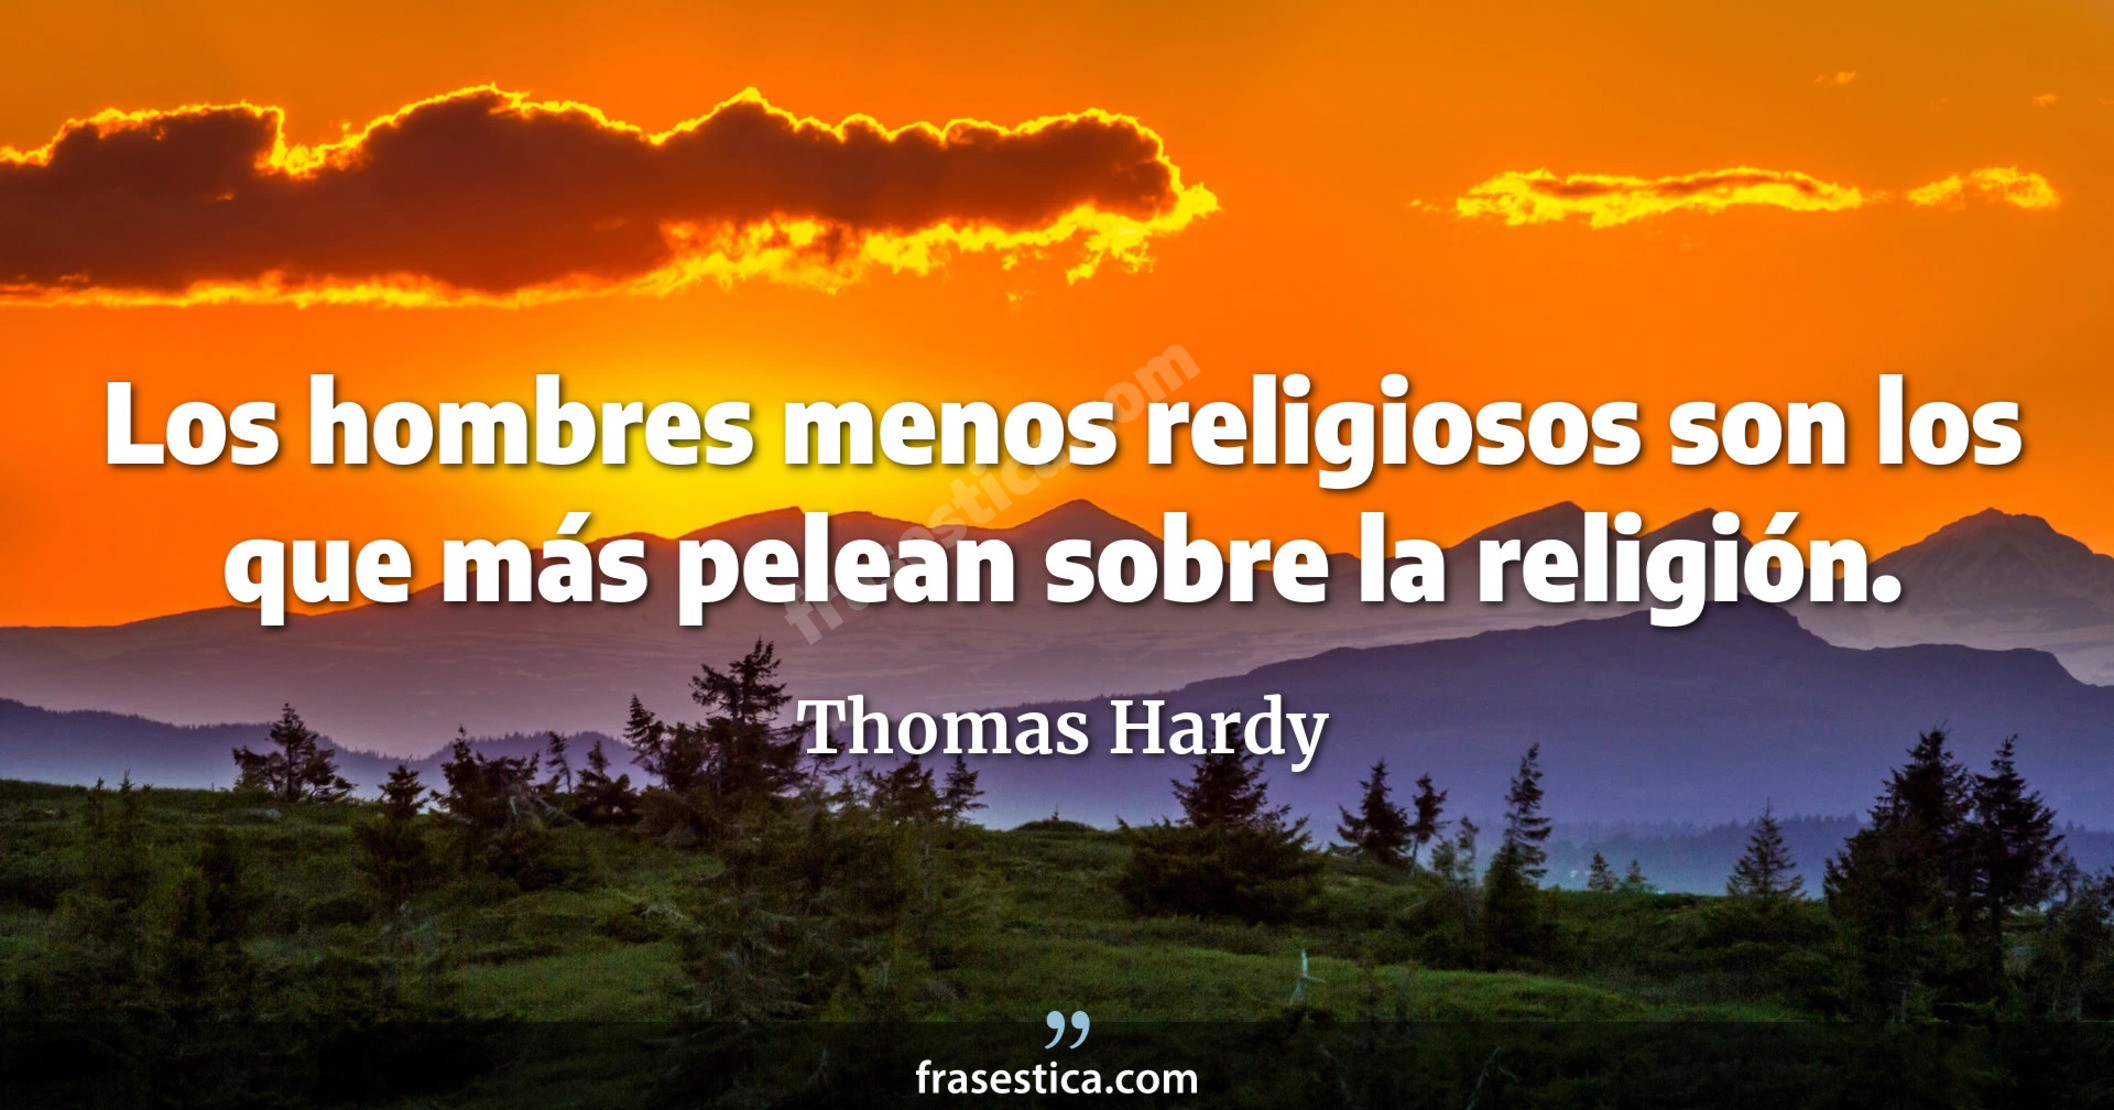 Los hombres menos religiosos son los que más pelean sobre la religión. - Thomas Hardy